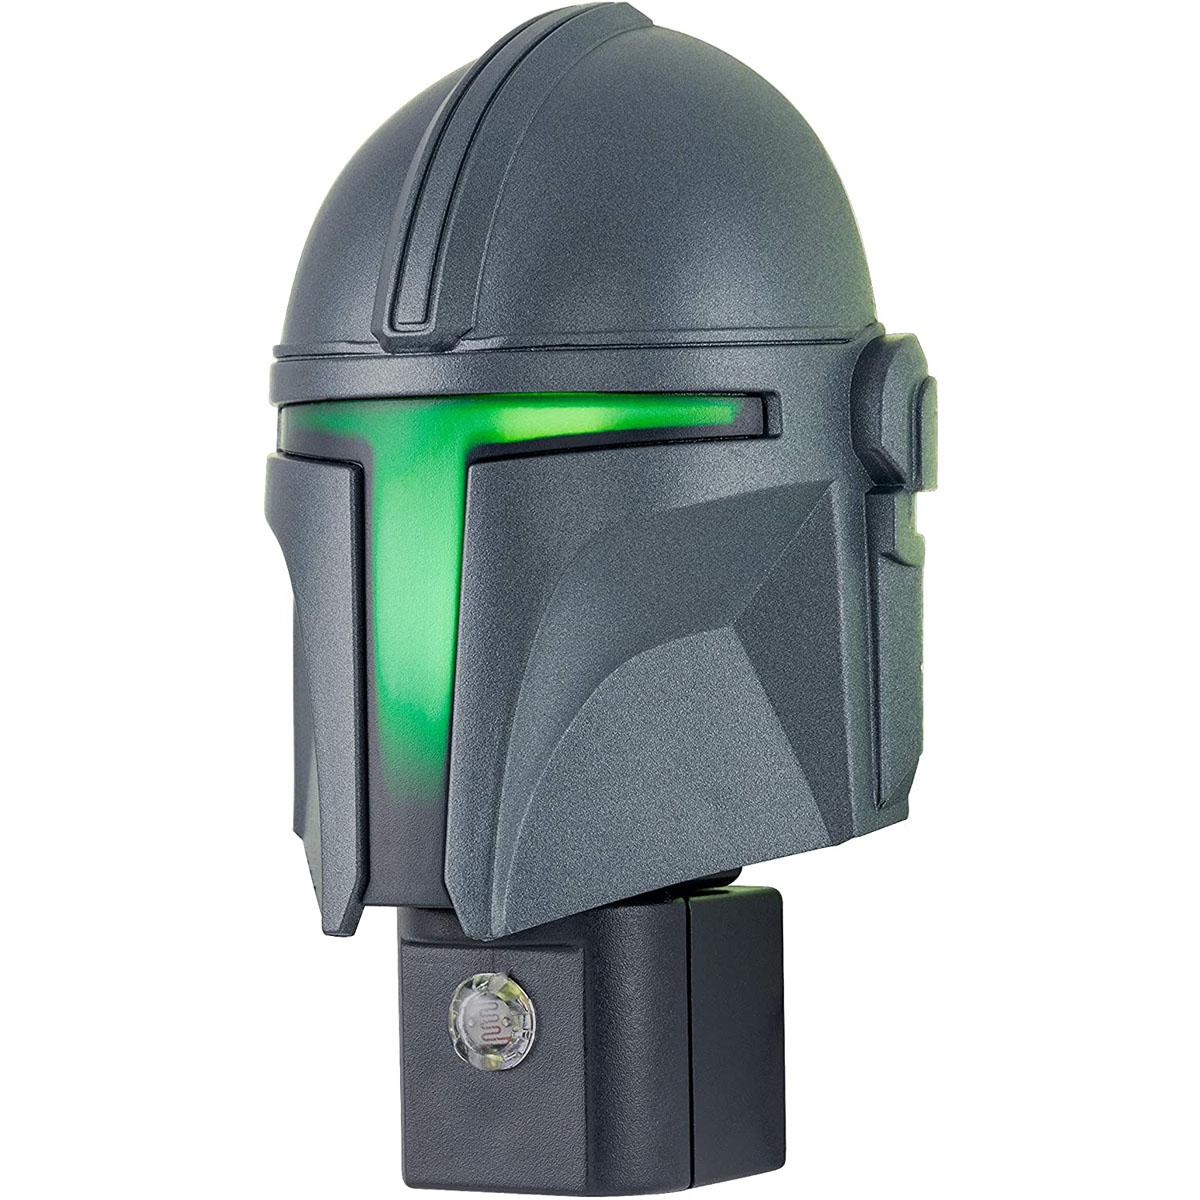 Star Wars The Mandalorian Helmet LED Night Light for $6.98